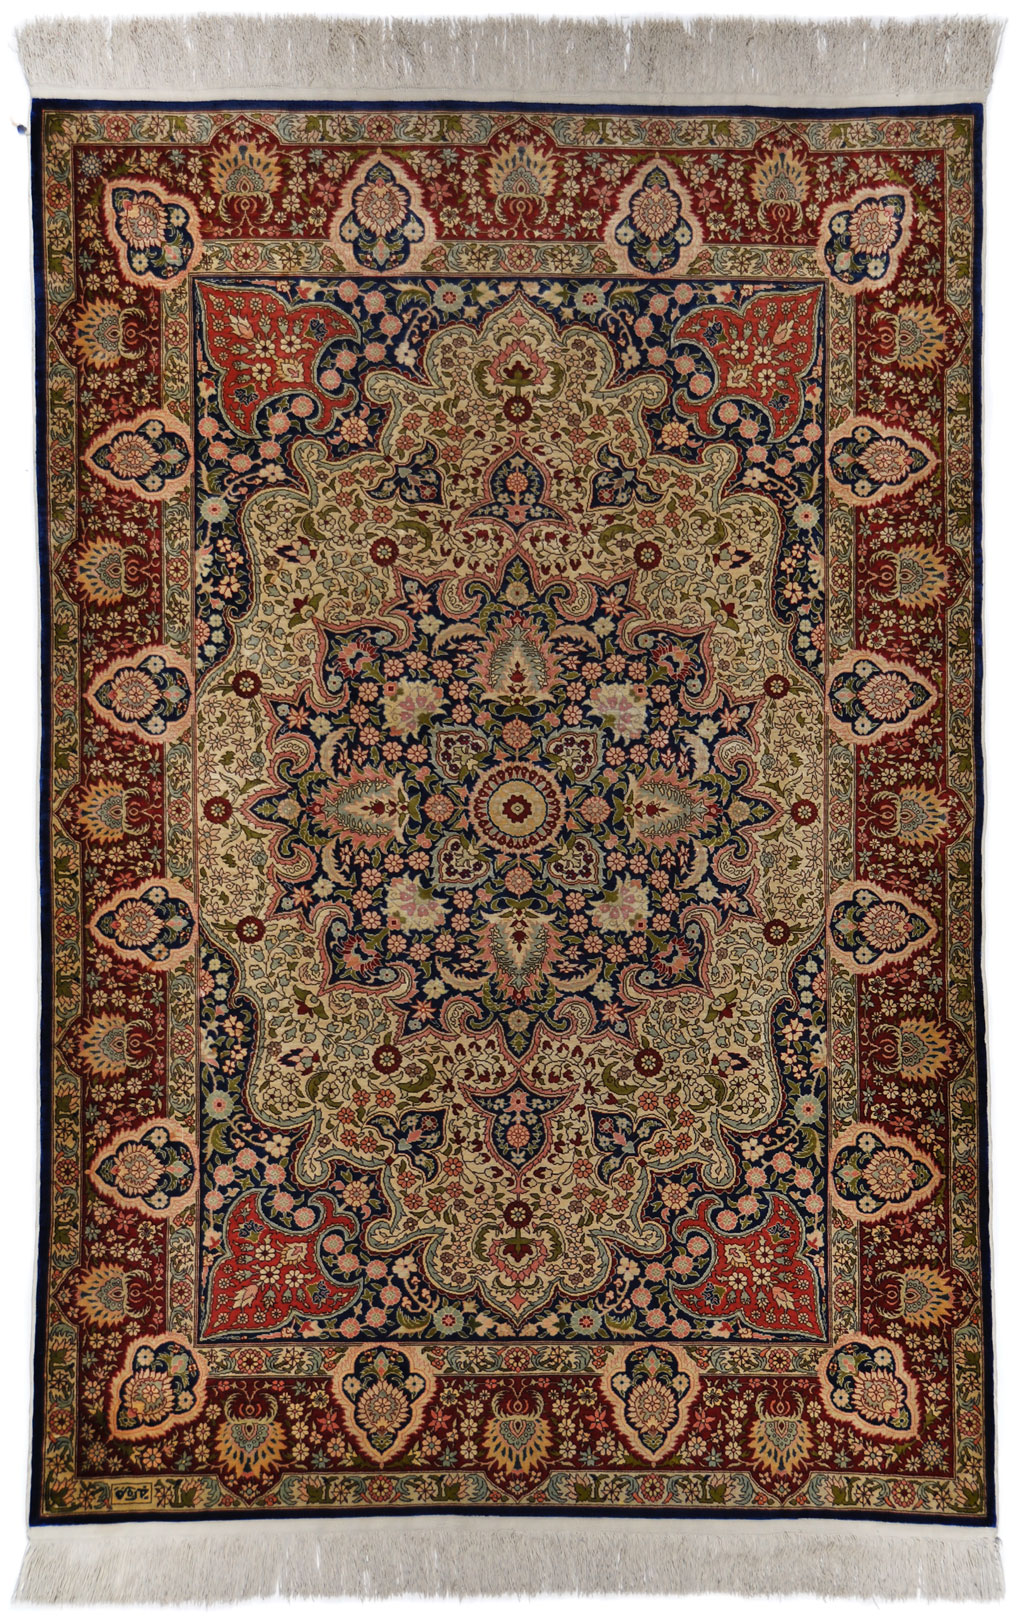 de elite Verrijking Kritiek Zijde Hereke tapijt (109 x 164 cm) - Perez vloerkleden voor élk interieur